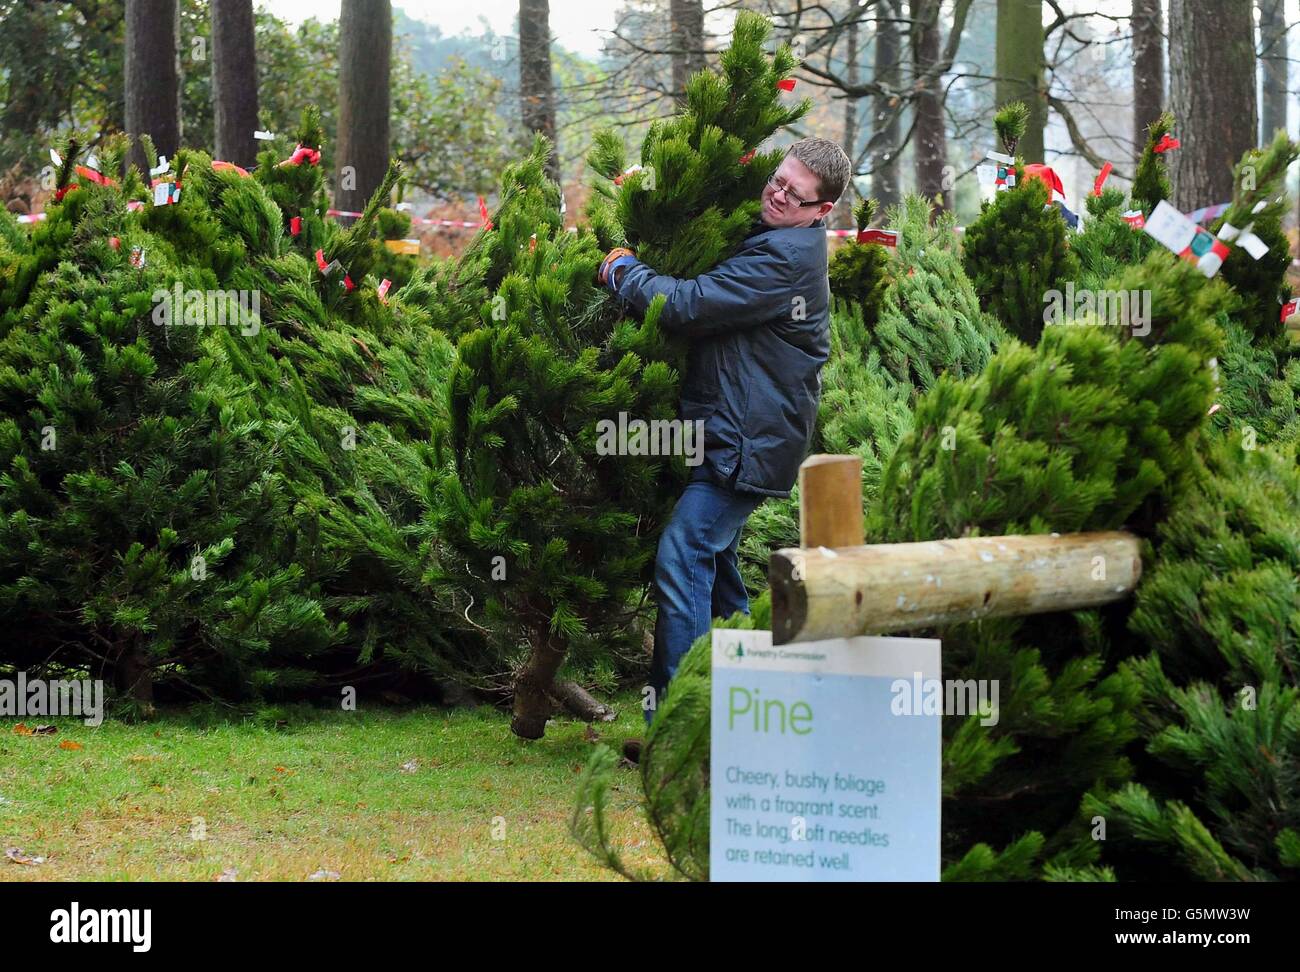 Los clientes compran árboles de Navidad en el lanzamiento de la venta de árboles de Navidad en Birch Valley Visitor Center, cerca de Rugeley, Staffordshire. Foto de stock